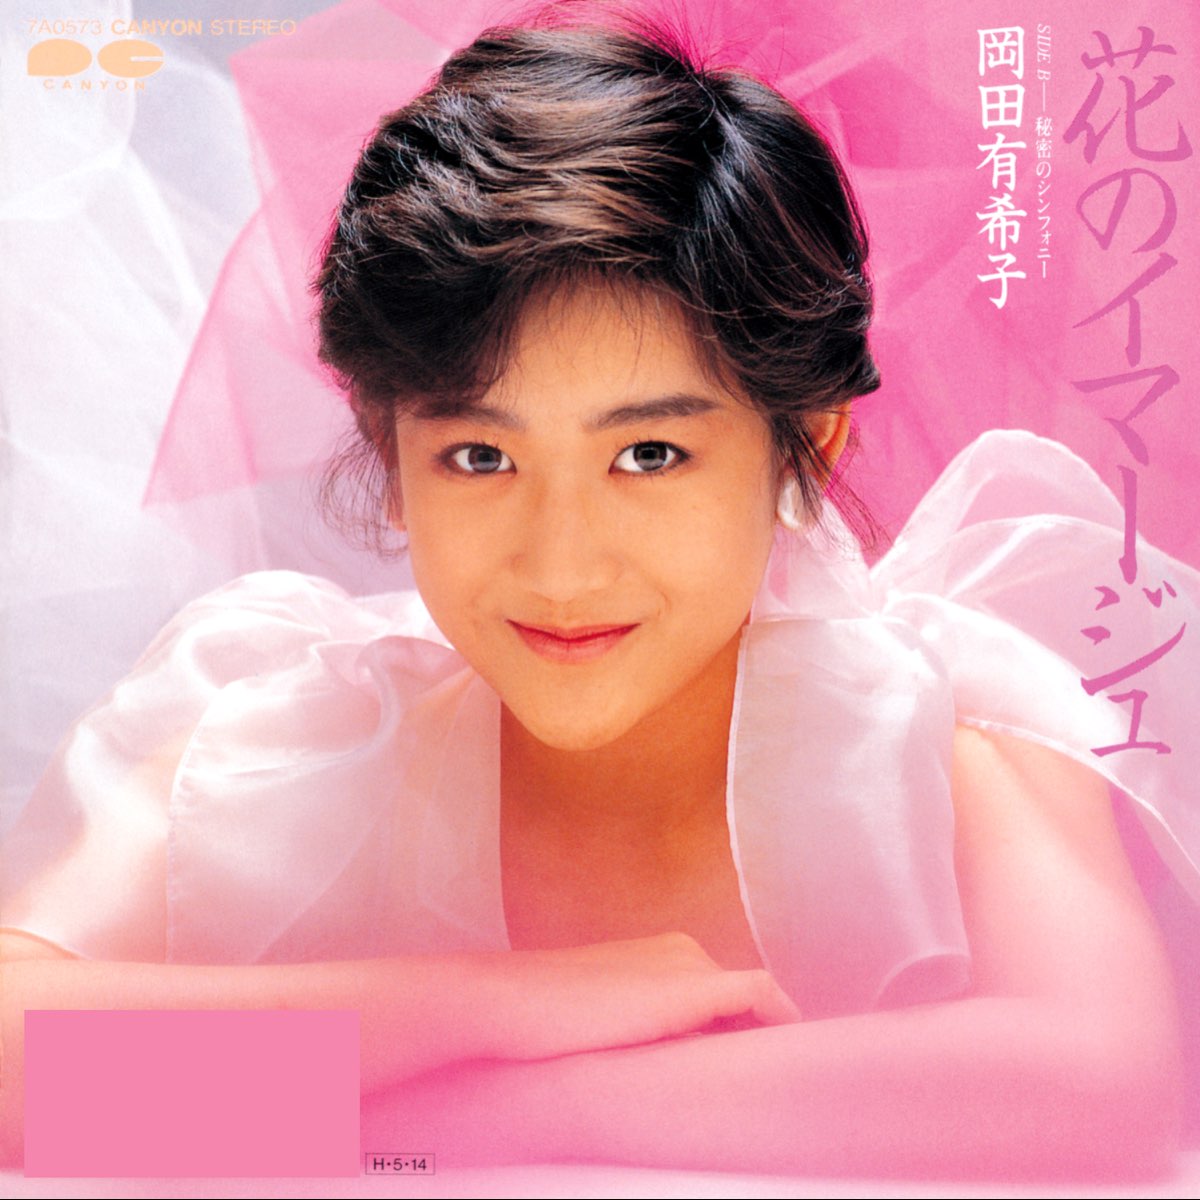 Apple Music 上岡田有希子的专辑《花のイマージュ- Single》